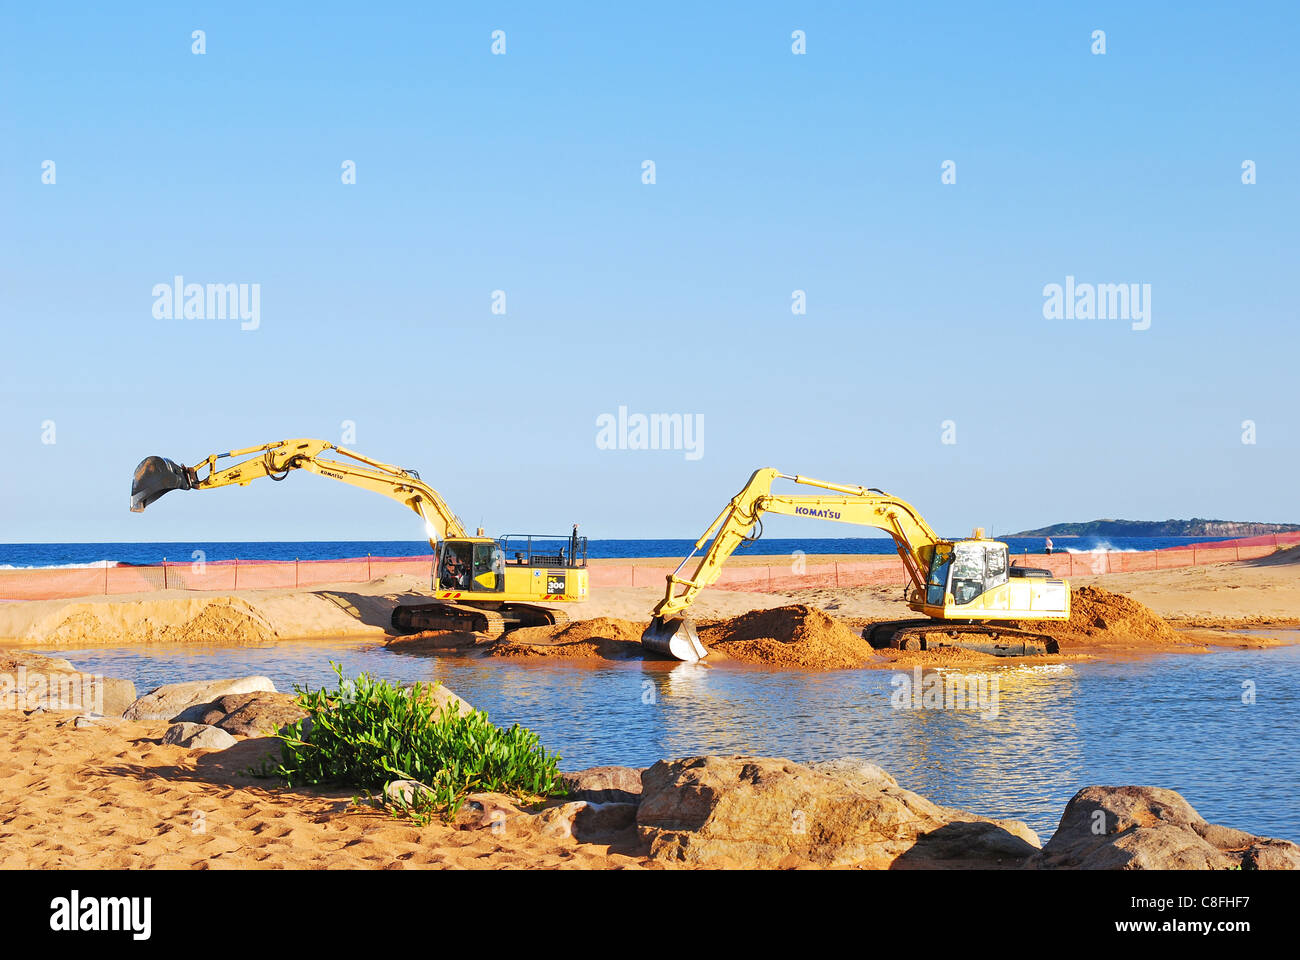 2 tracked excavators dredging sand Stock Photo